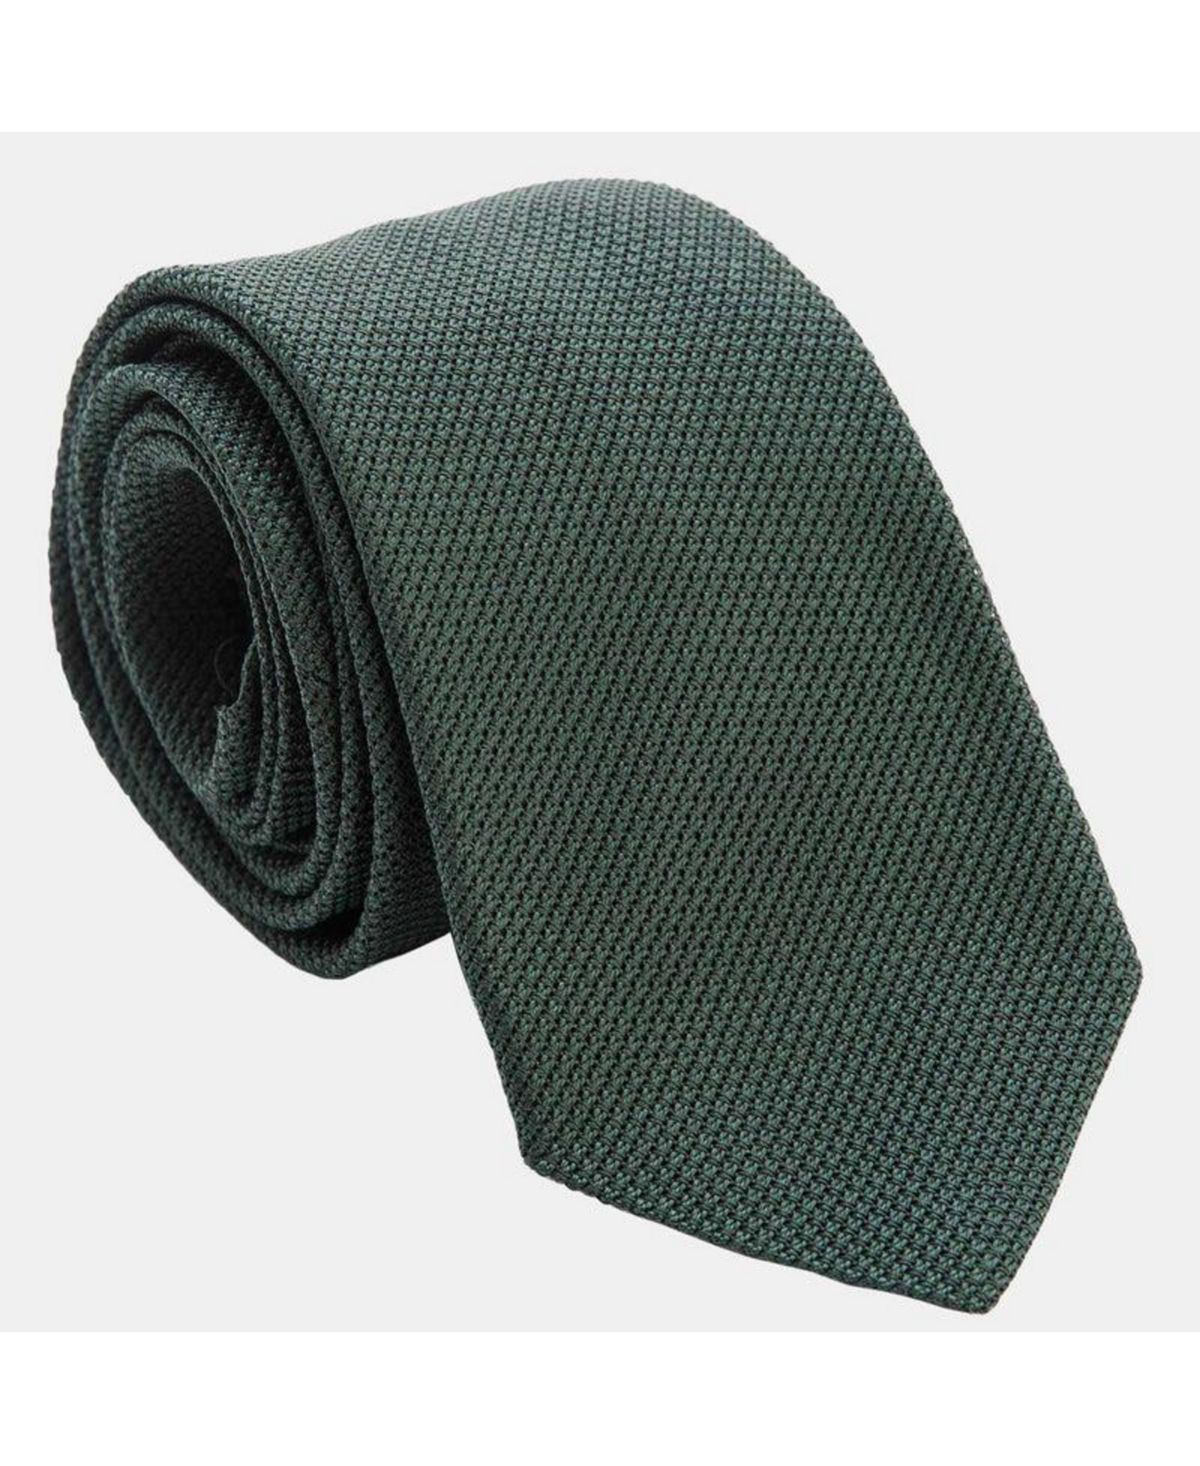 Foresta - Удлиненный шелковый галстук-гренадин для мужчин Elizabetta foresta удлиненный шелковый галстук гренадин для мужчин elizabetta